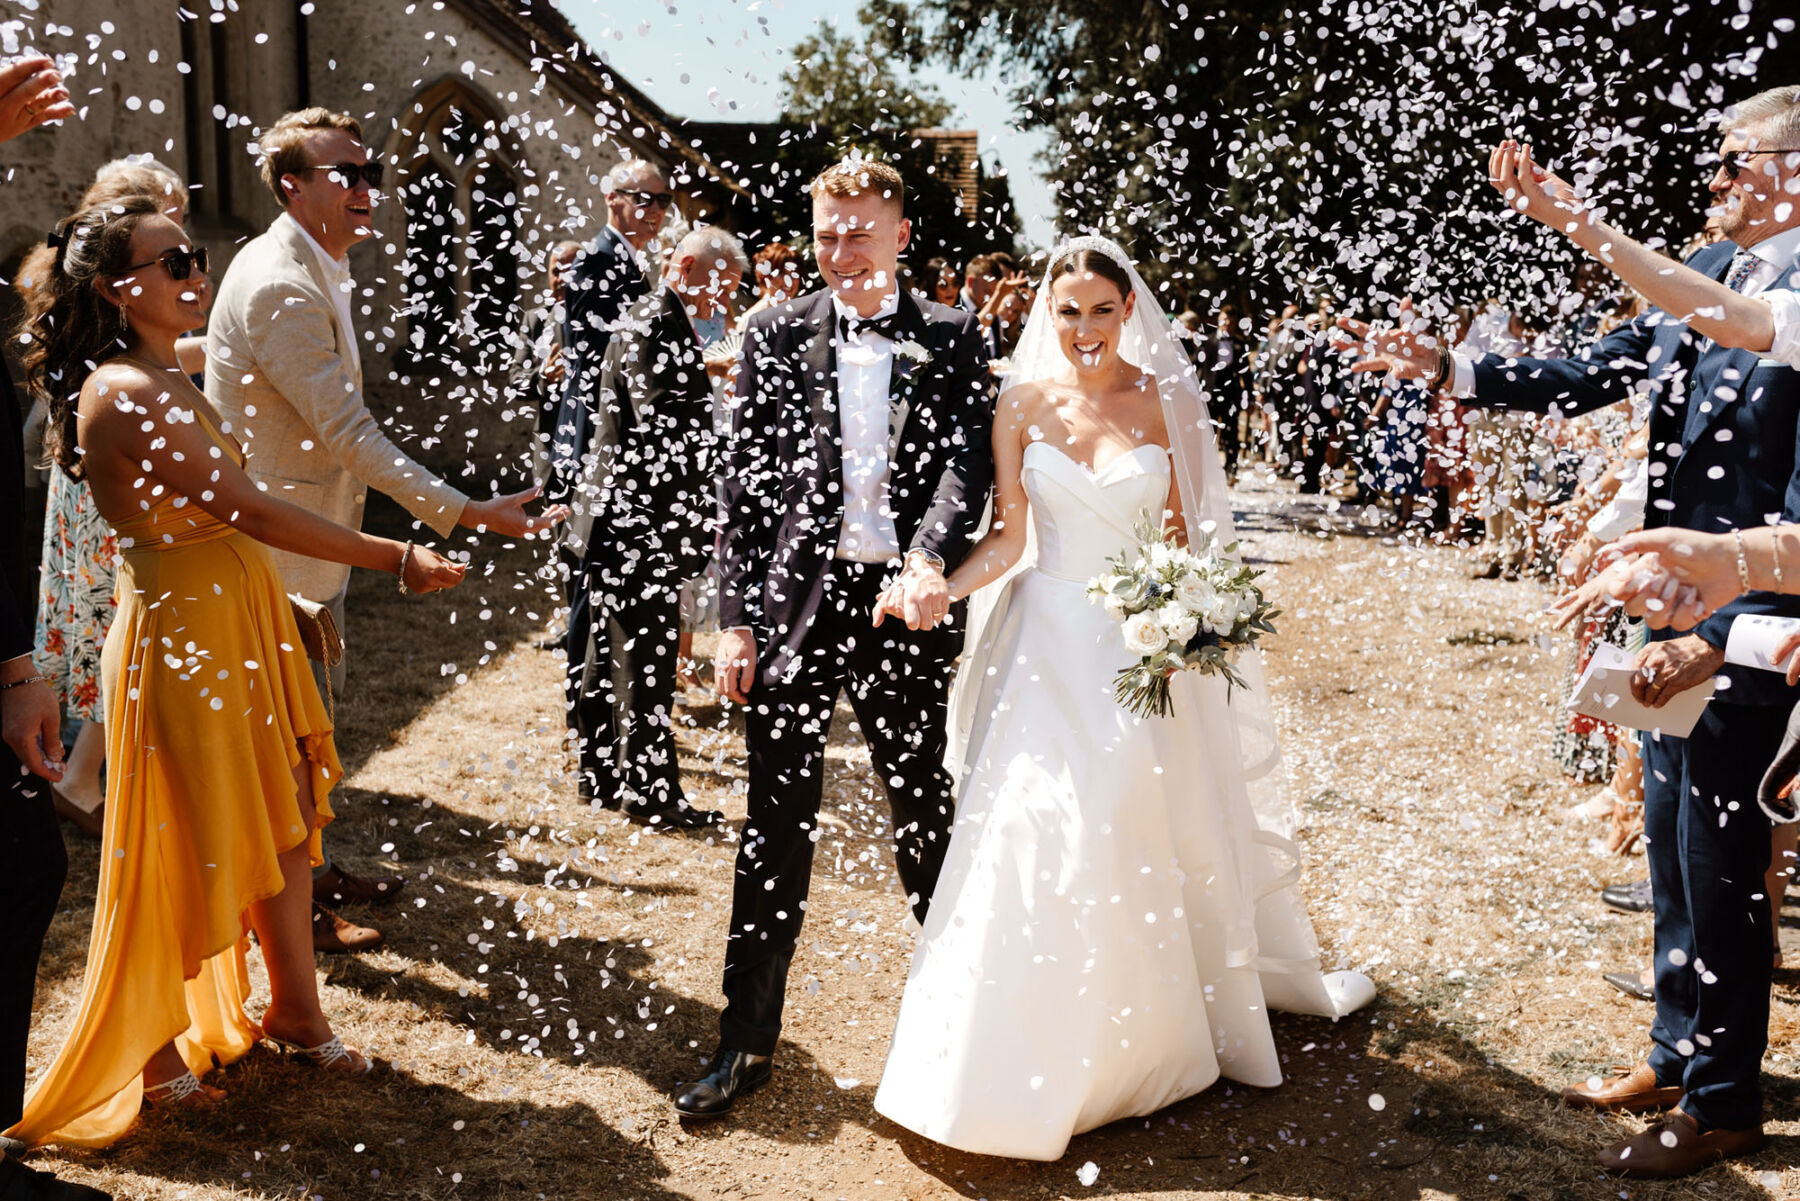 Confetti shot outside Silchester Farm wedding venue in Hampshire